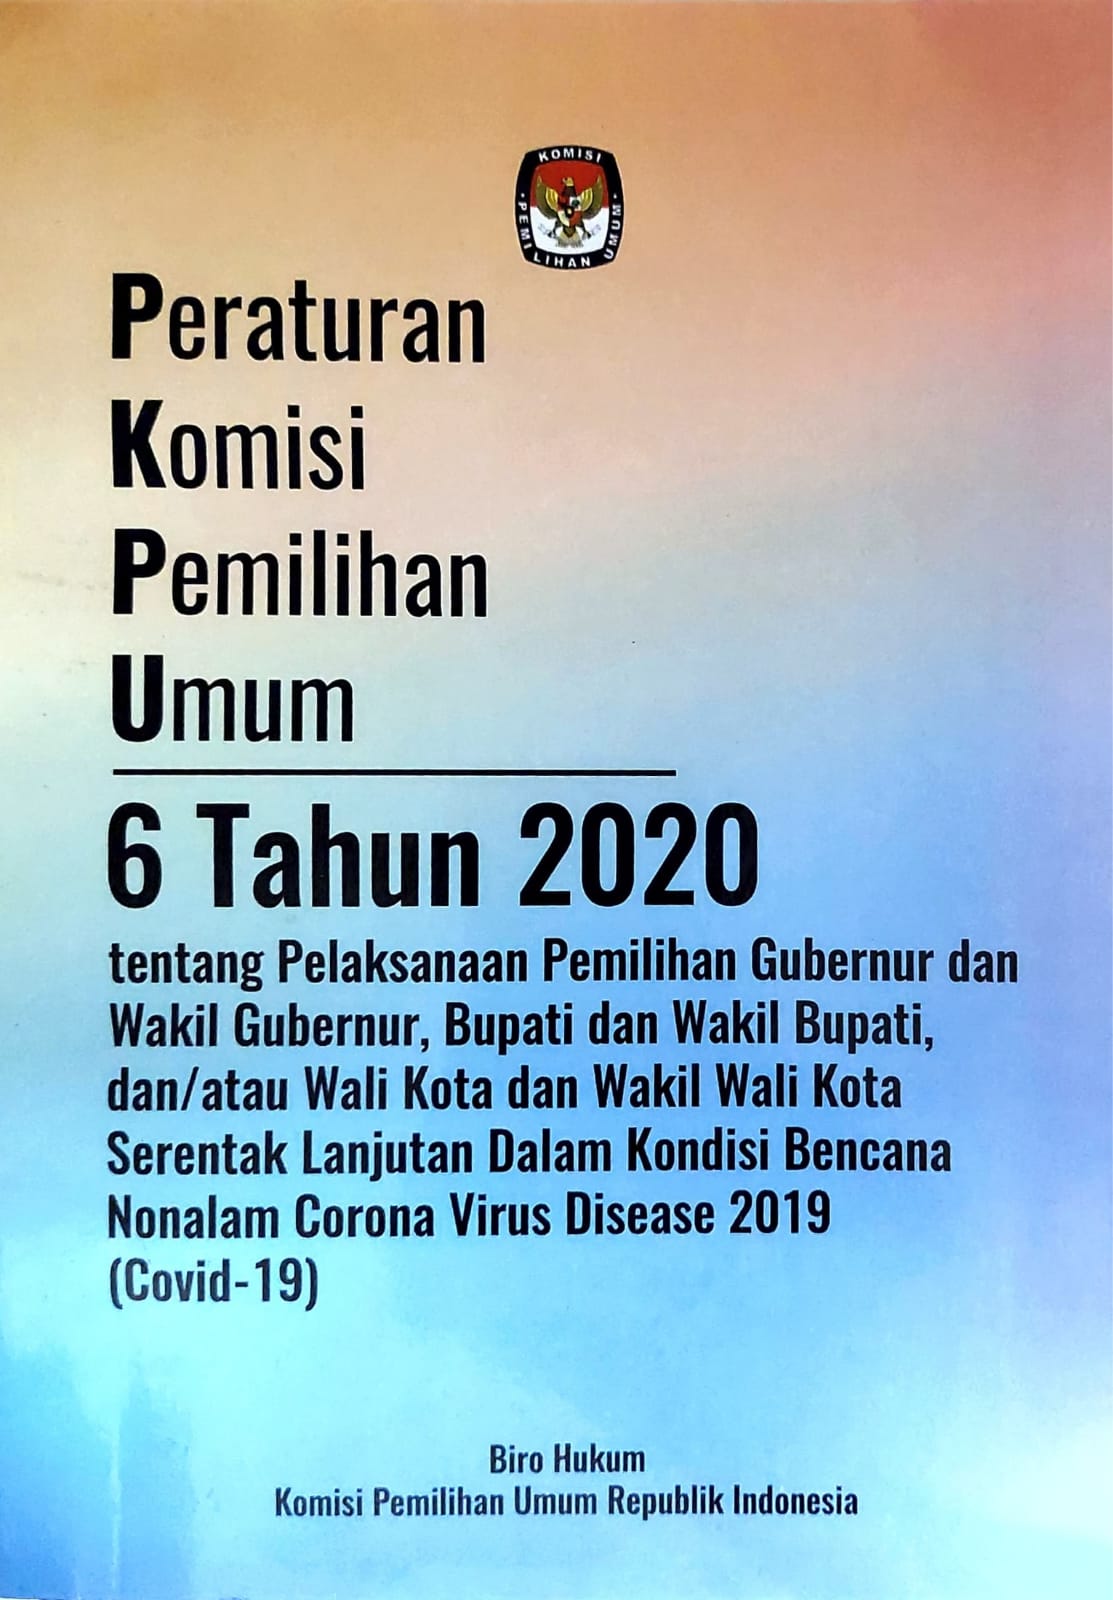 Peraturan komisi pemilihan umum nomor 6 tahun 2020